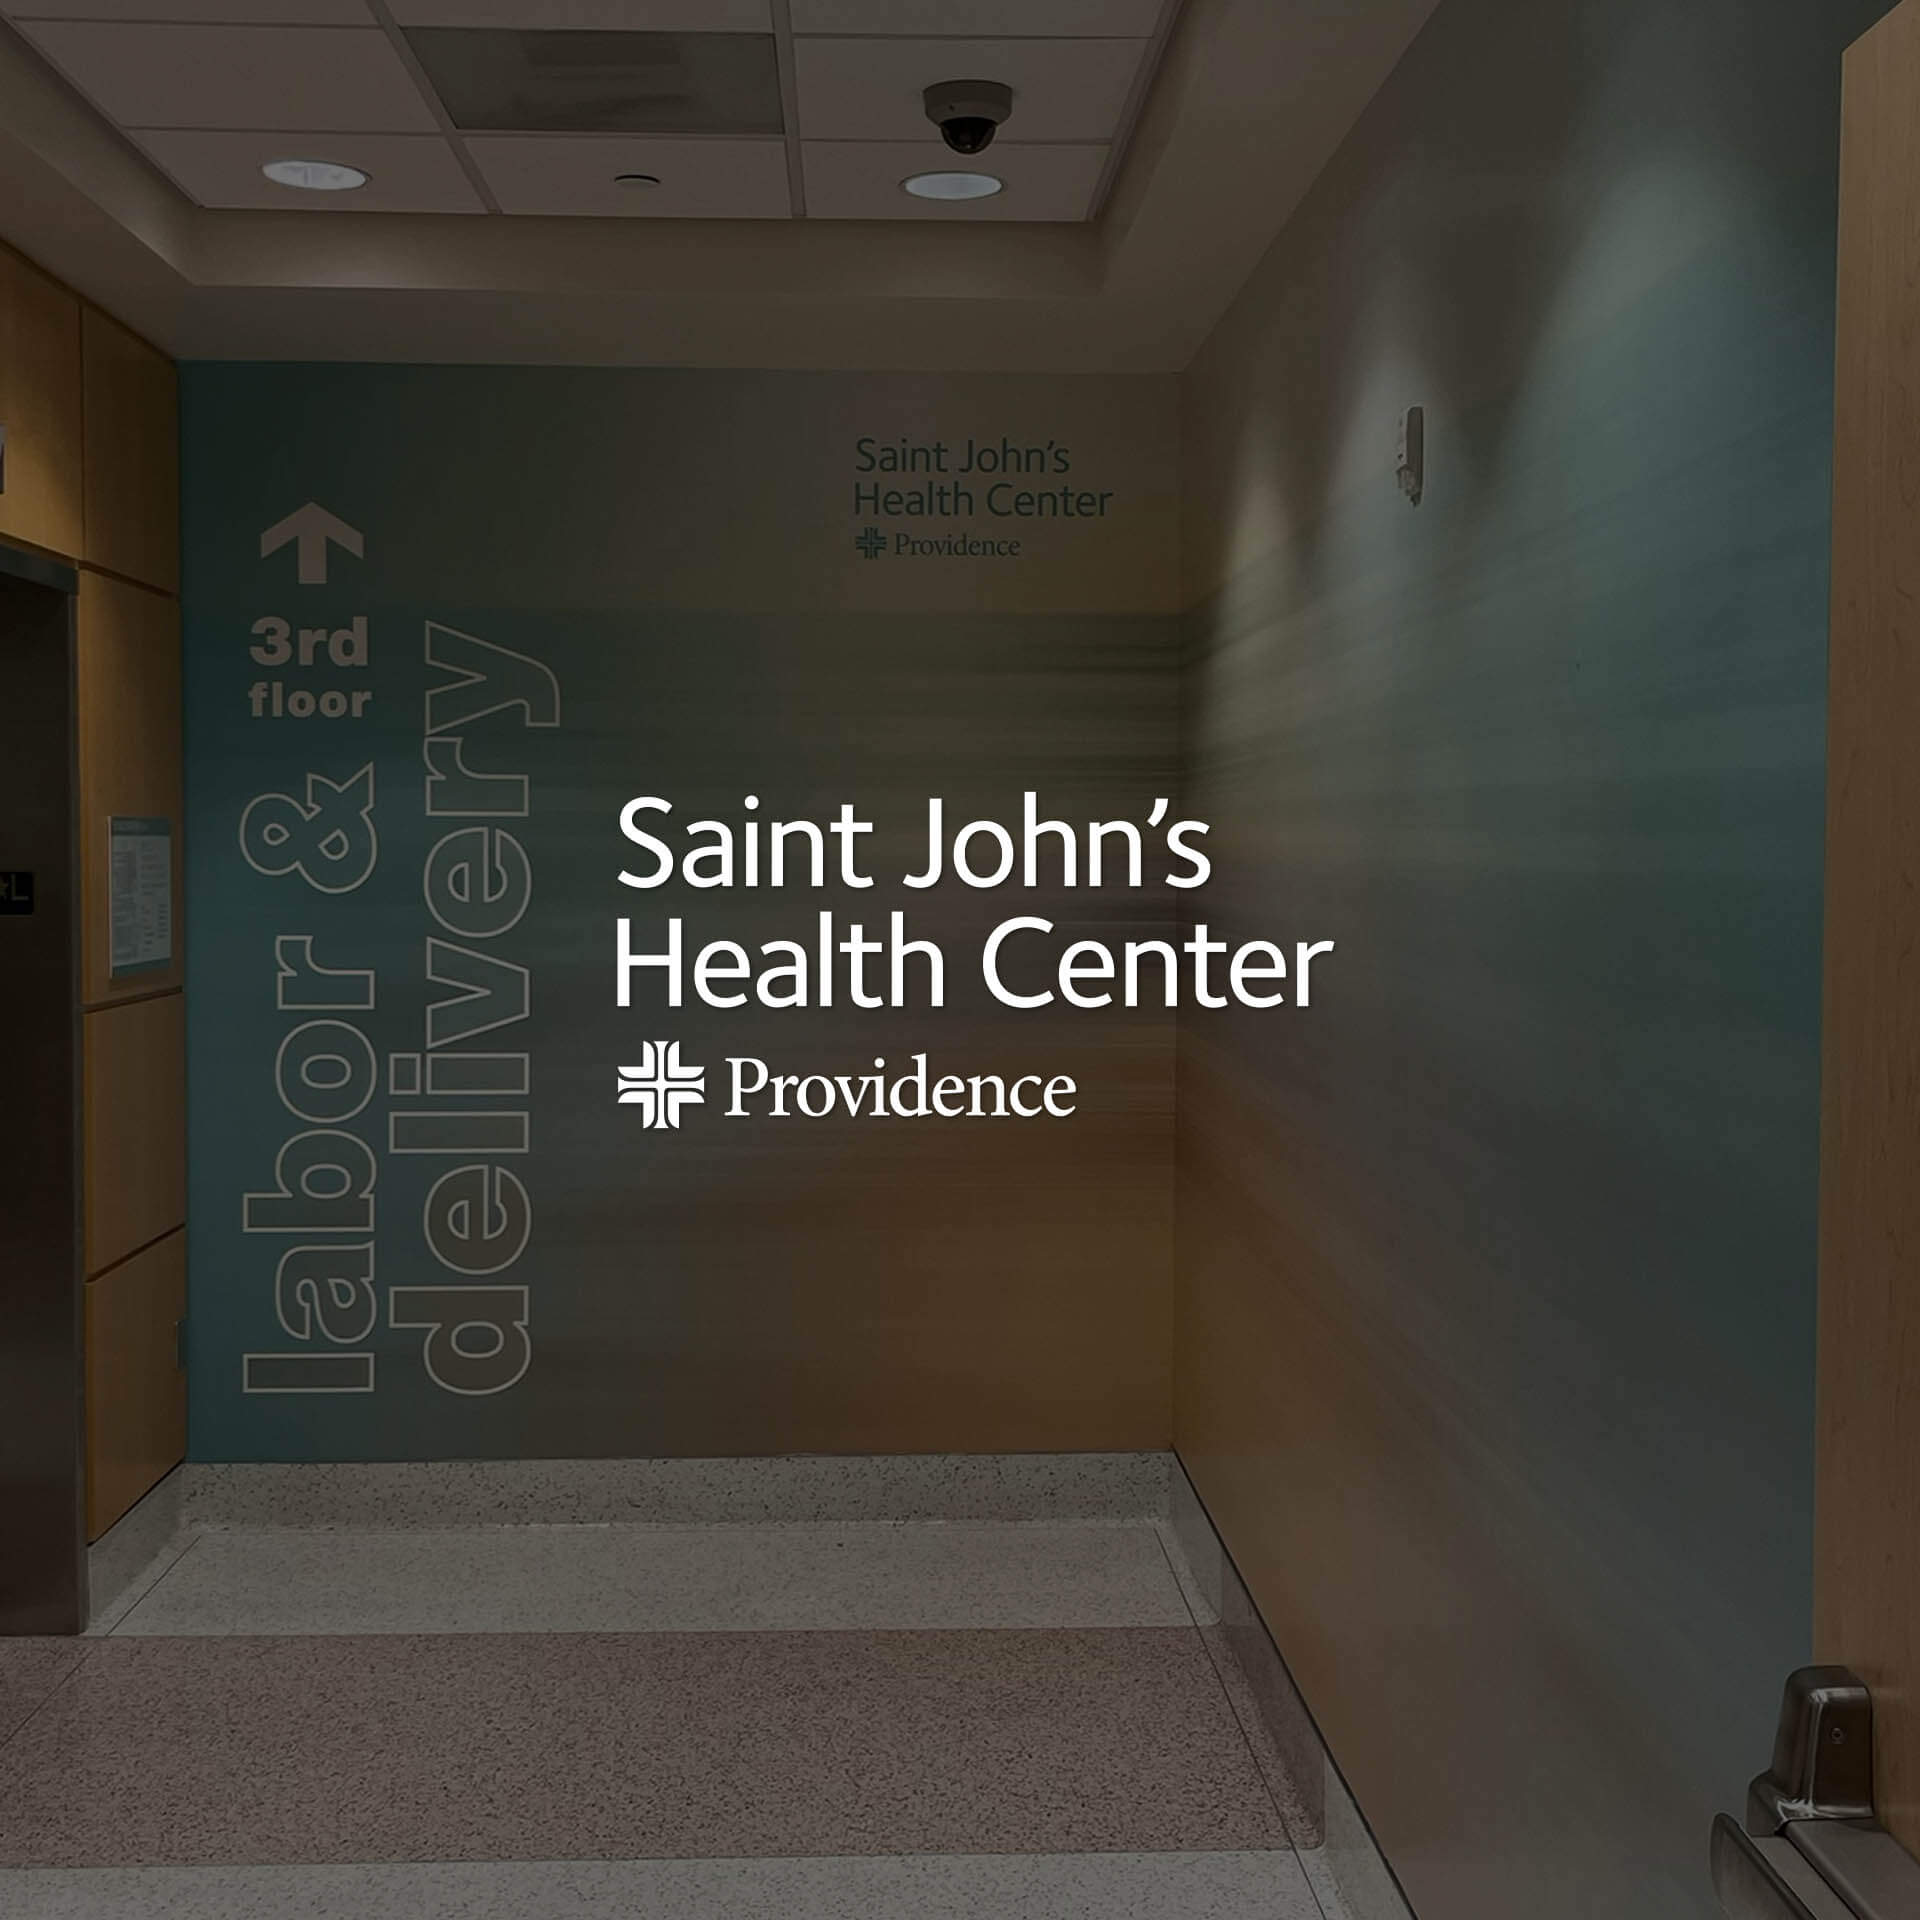 St. John’s Health Center environment